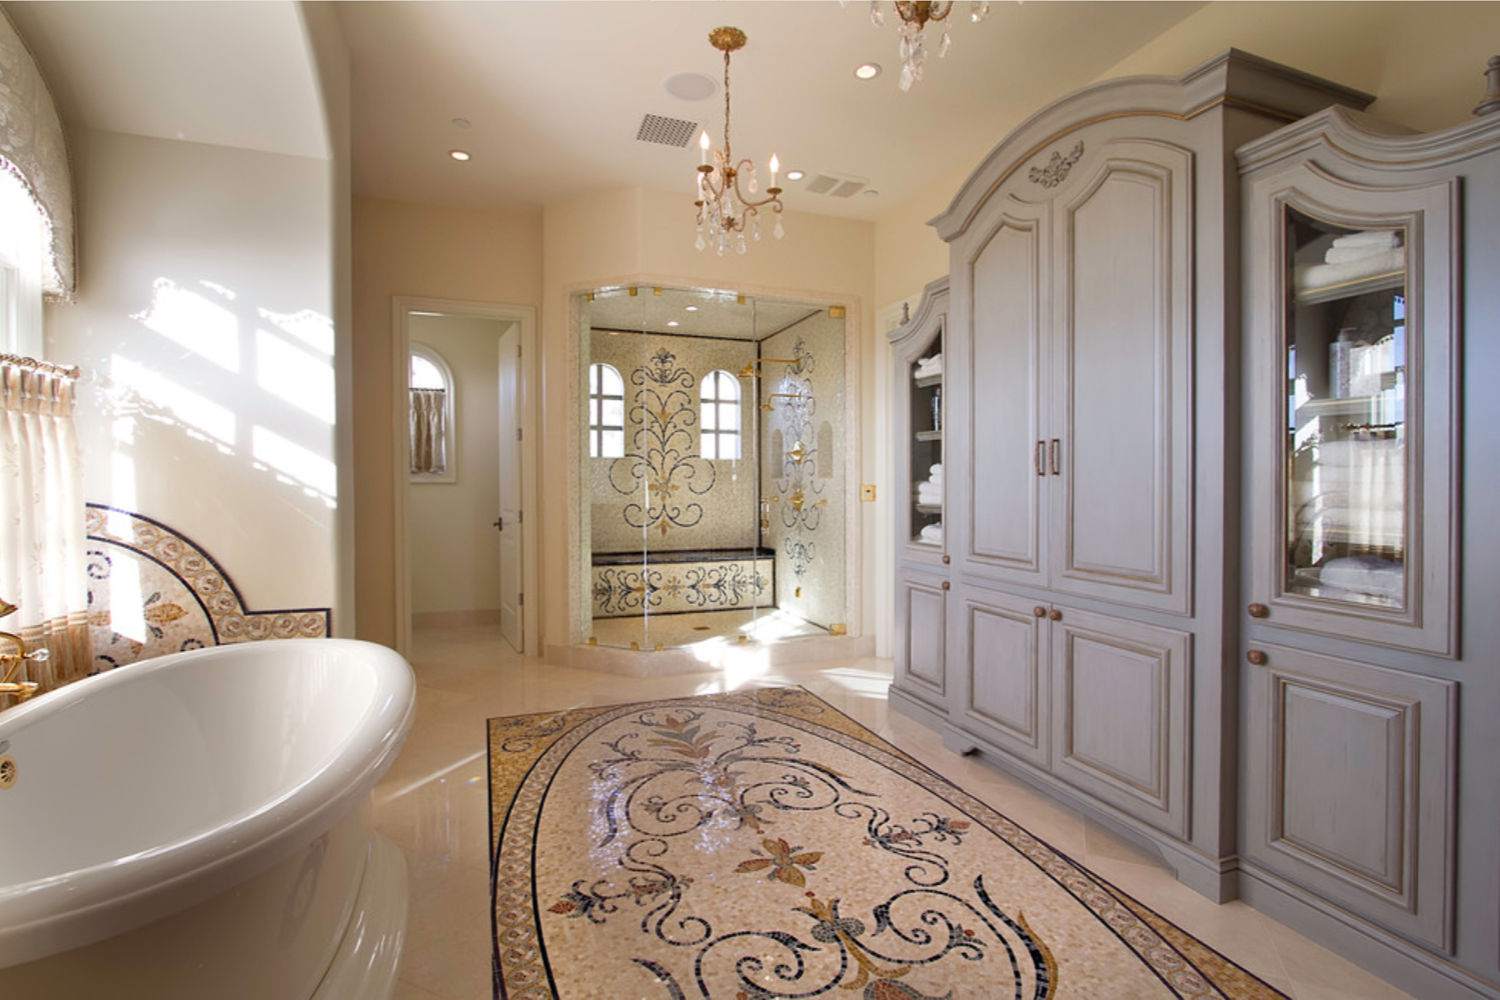 Tile rug. Best +60 Ideas to Enhance Your Bathroom’s Luxuriousness - 50